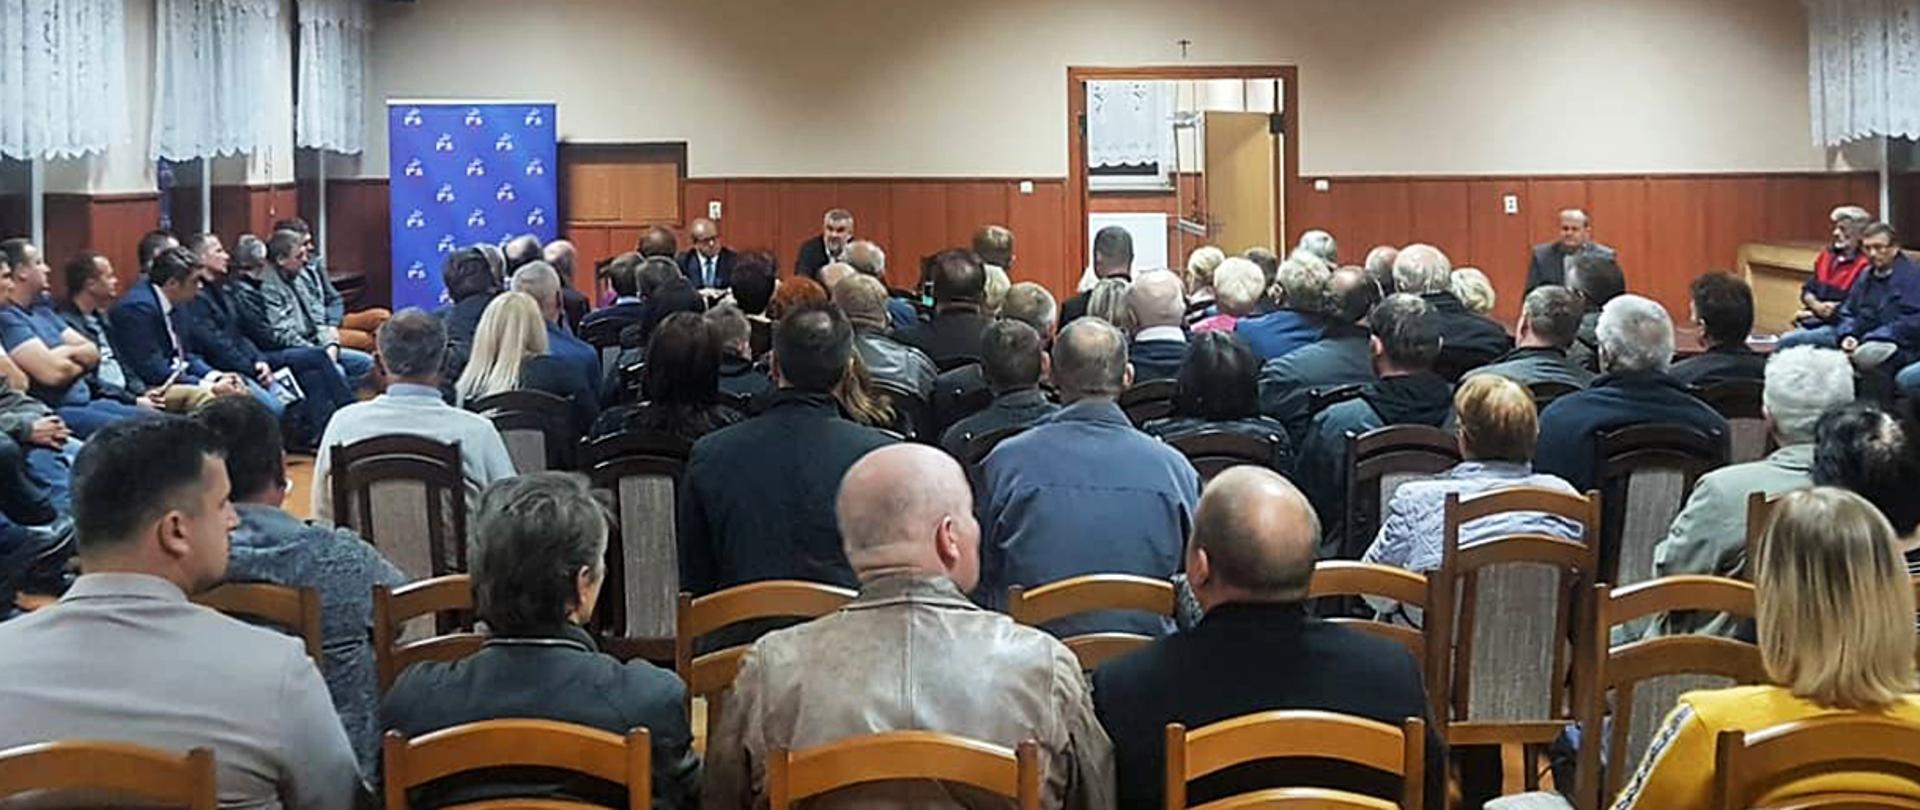 Spotkanie Ministra Ardanowskiego z rolnikami w Zgłowiączce